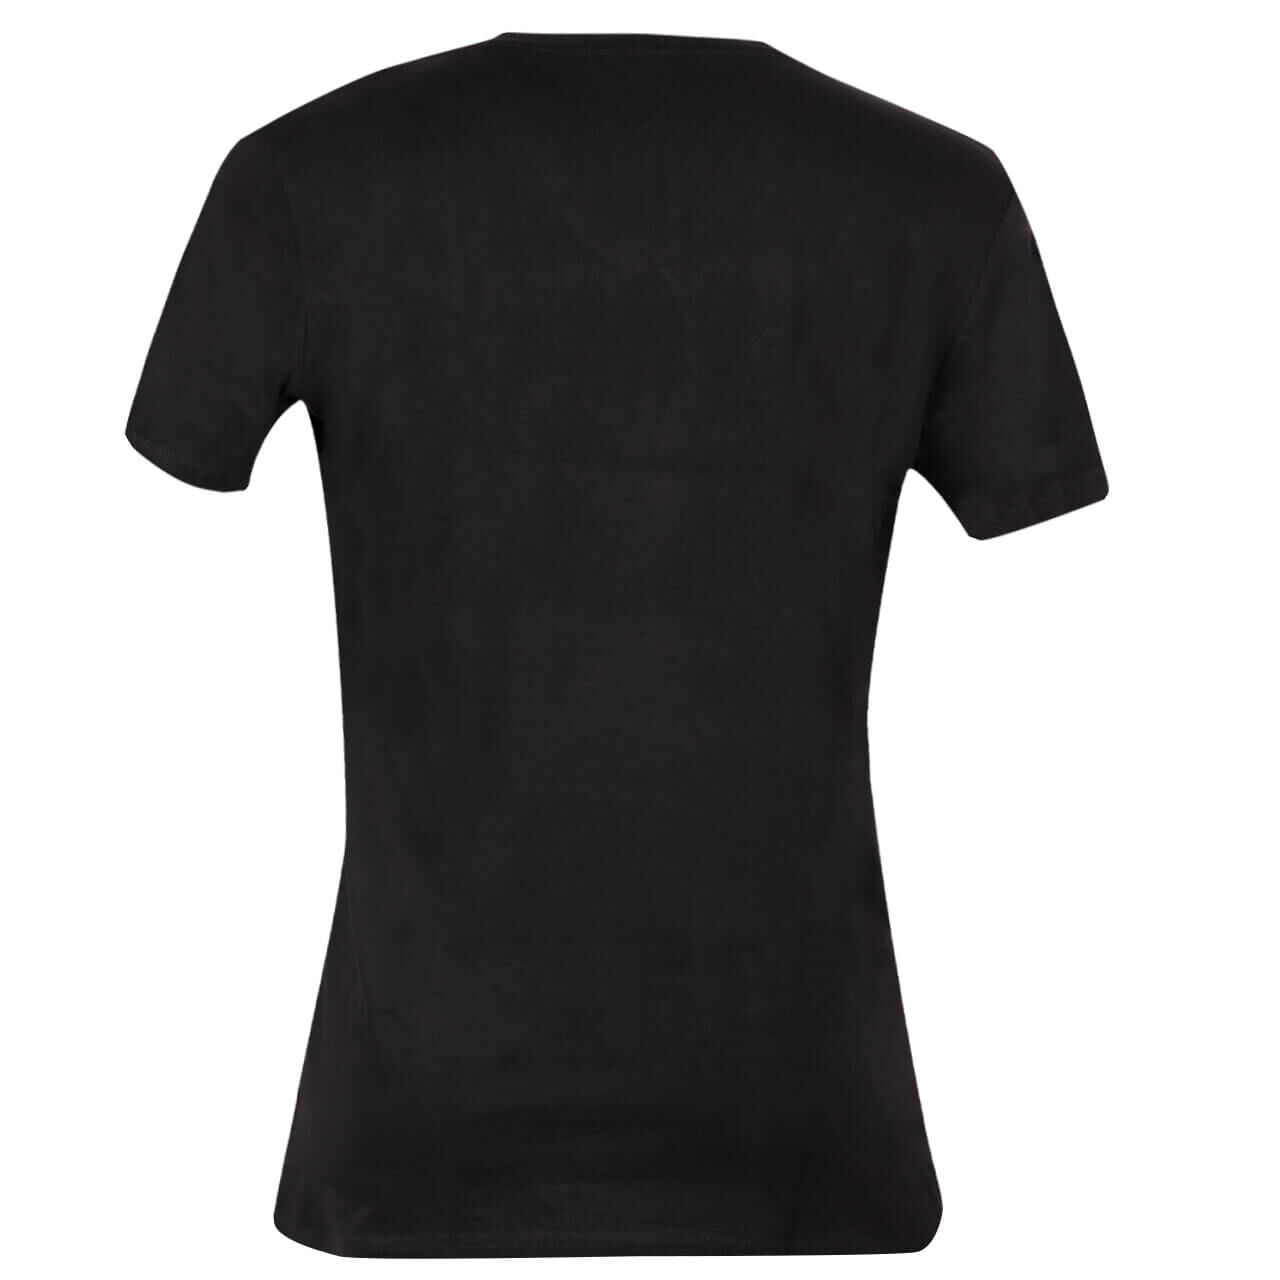 Tom Tailor T-Shirts für Herren Doppelpack, FarbNr.: 29999